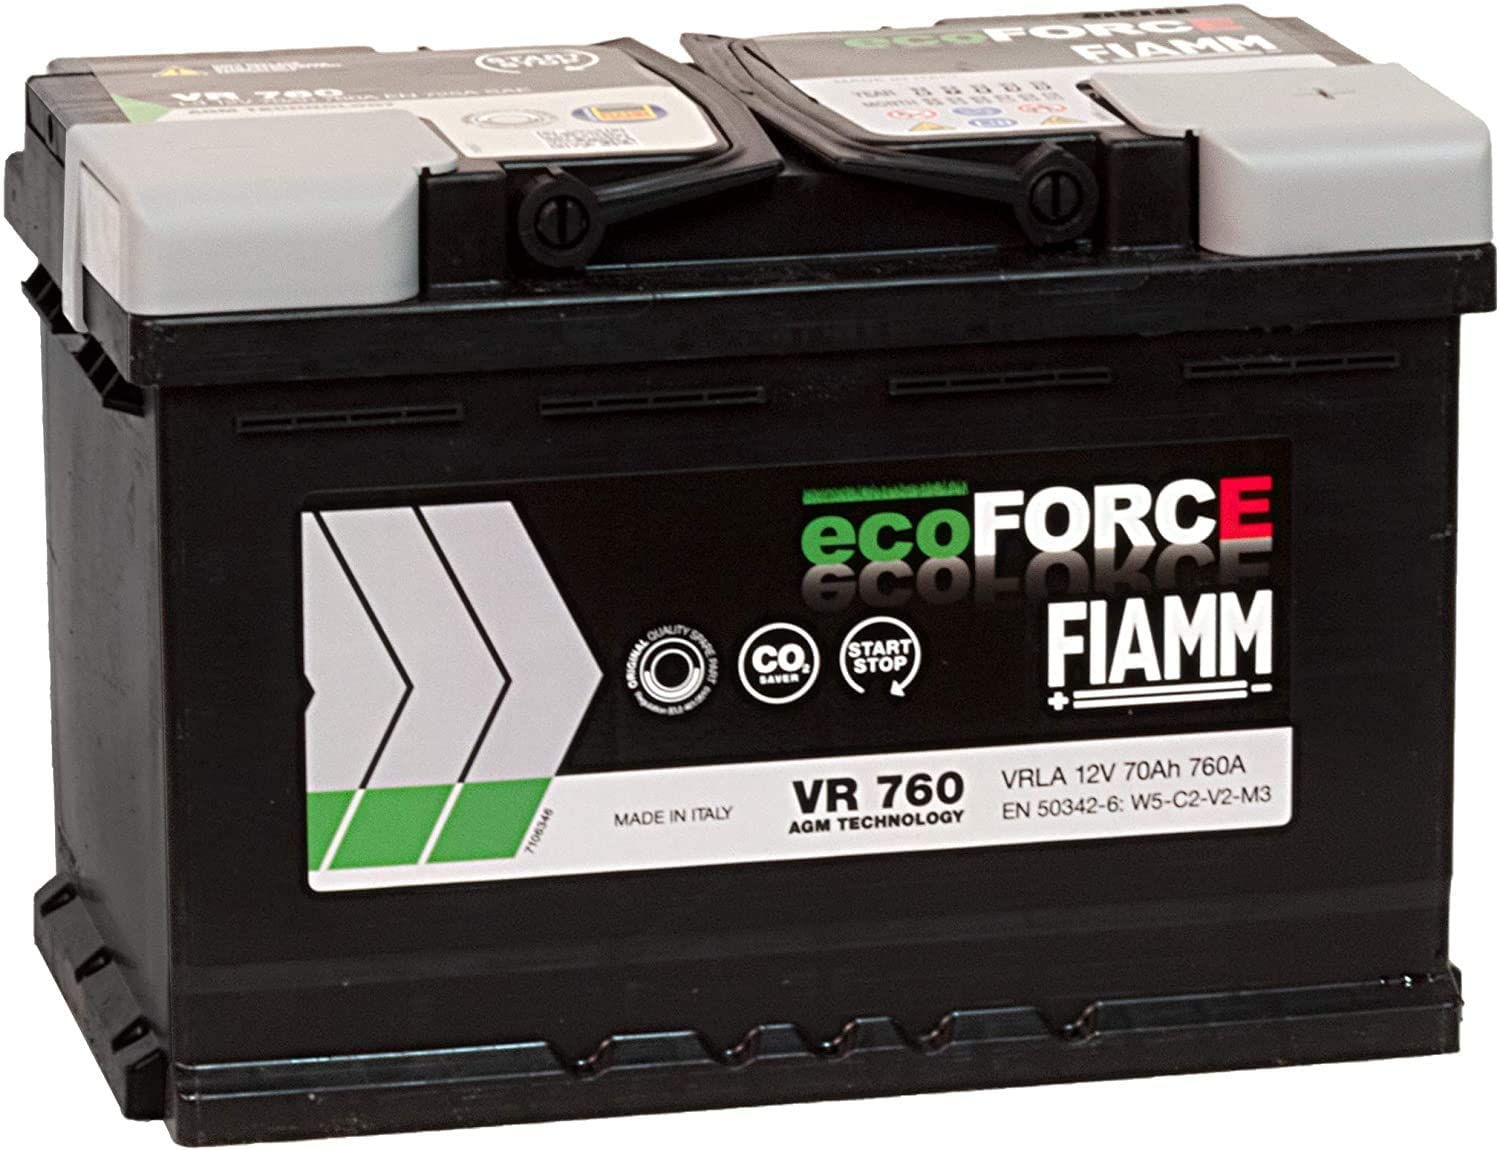 Batteria auto FIAMM VR760 12V 70Ah 760A - Ricambi auto SMC